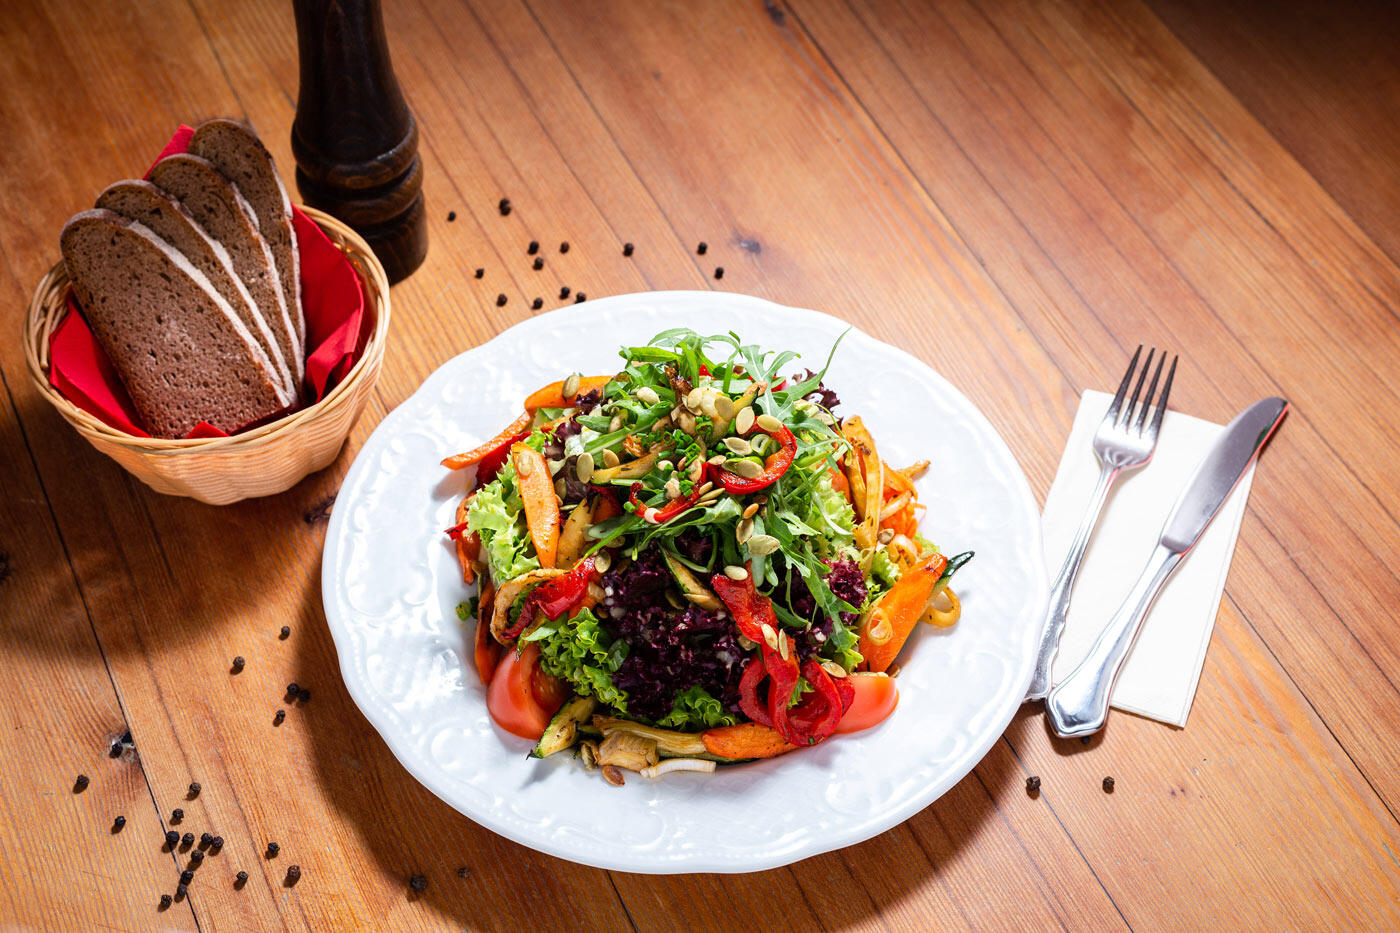 Bunter Salat auf einem weißen Teller. Daneben steht ein Korb mit mehreren Brotscheiben. Im Hintergrund sieht man einen Holztisch